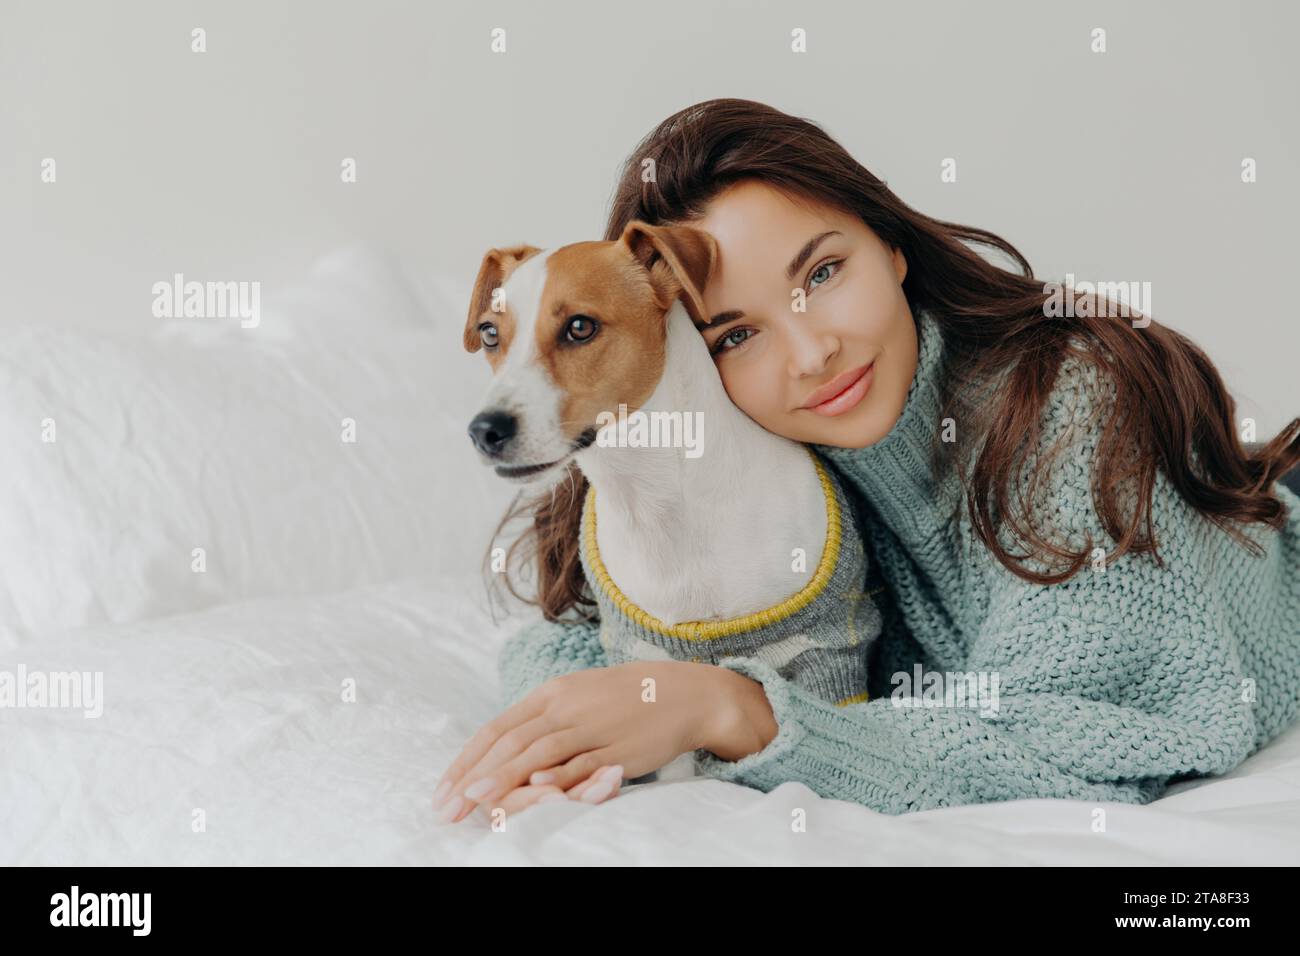 Donna rilassata con un sorriso sereno, sdraiata accanto al suo cane su un letto bianco, evocando un senso di pace e compagnia Foto Stock